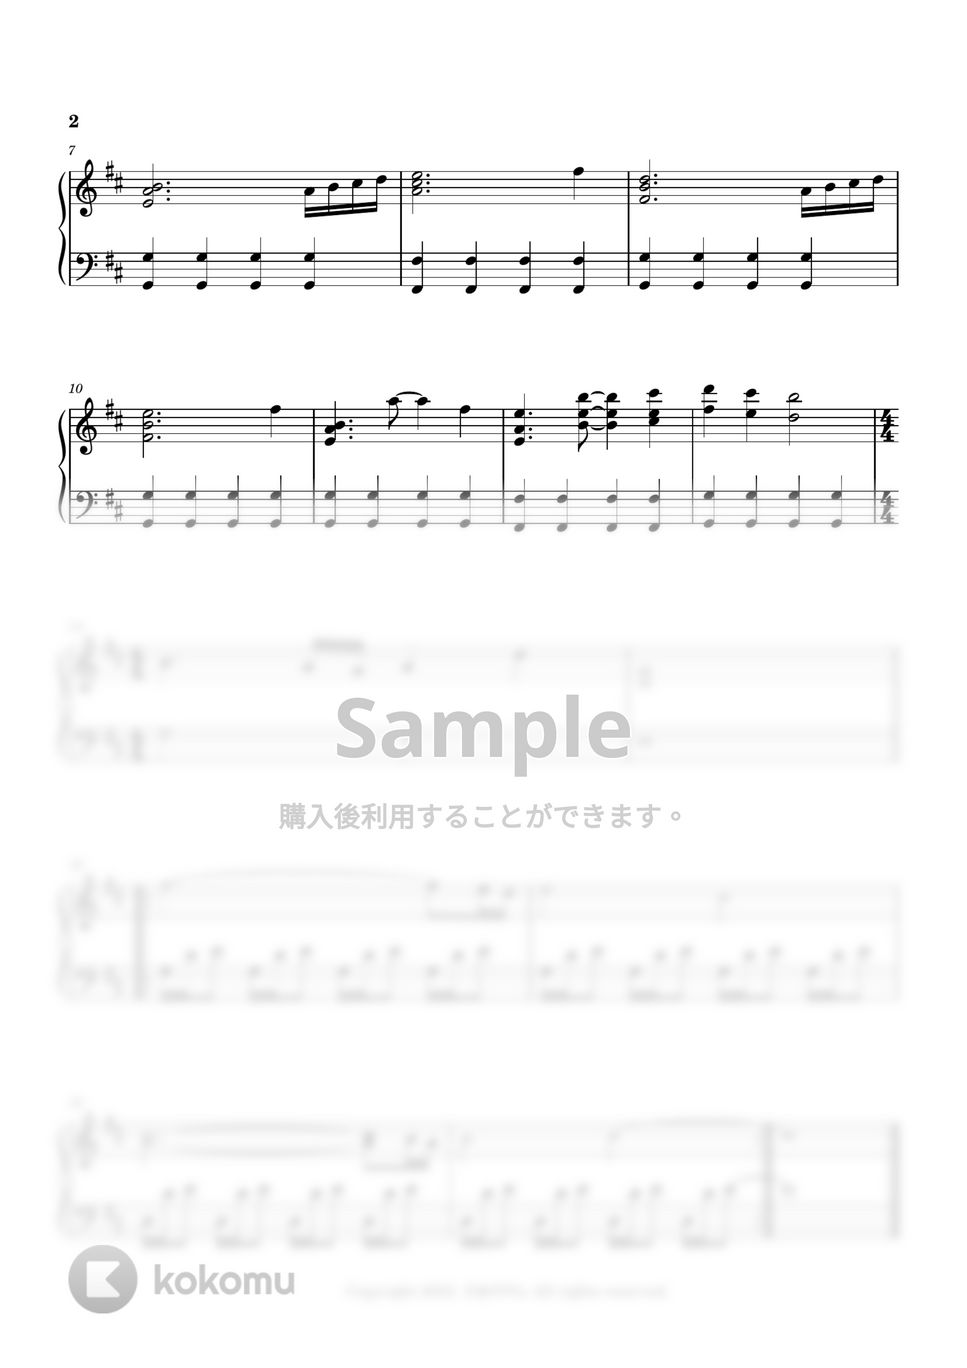 Seiji Kameda - 人を好きになること (今夜、世界からこの恋が消えても track 15) by 今日ピアノ(Oneul Piano)